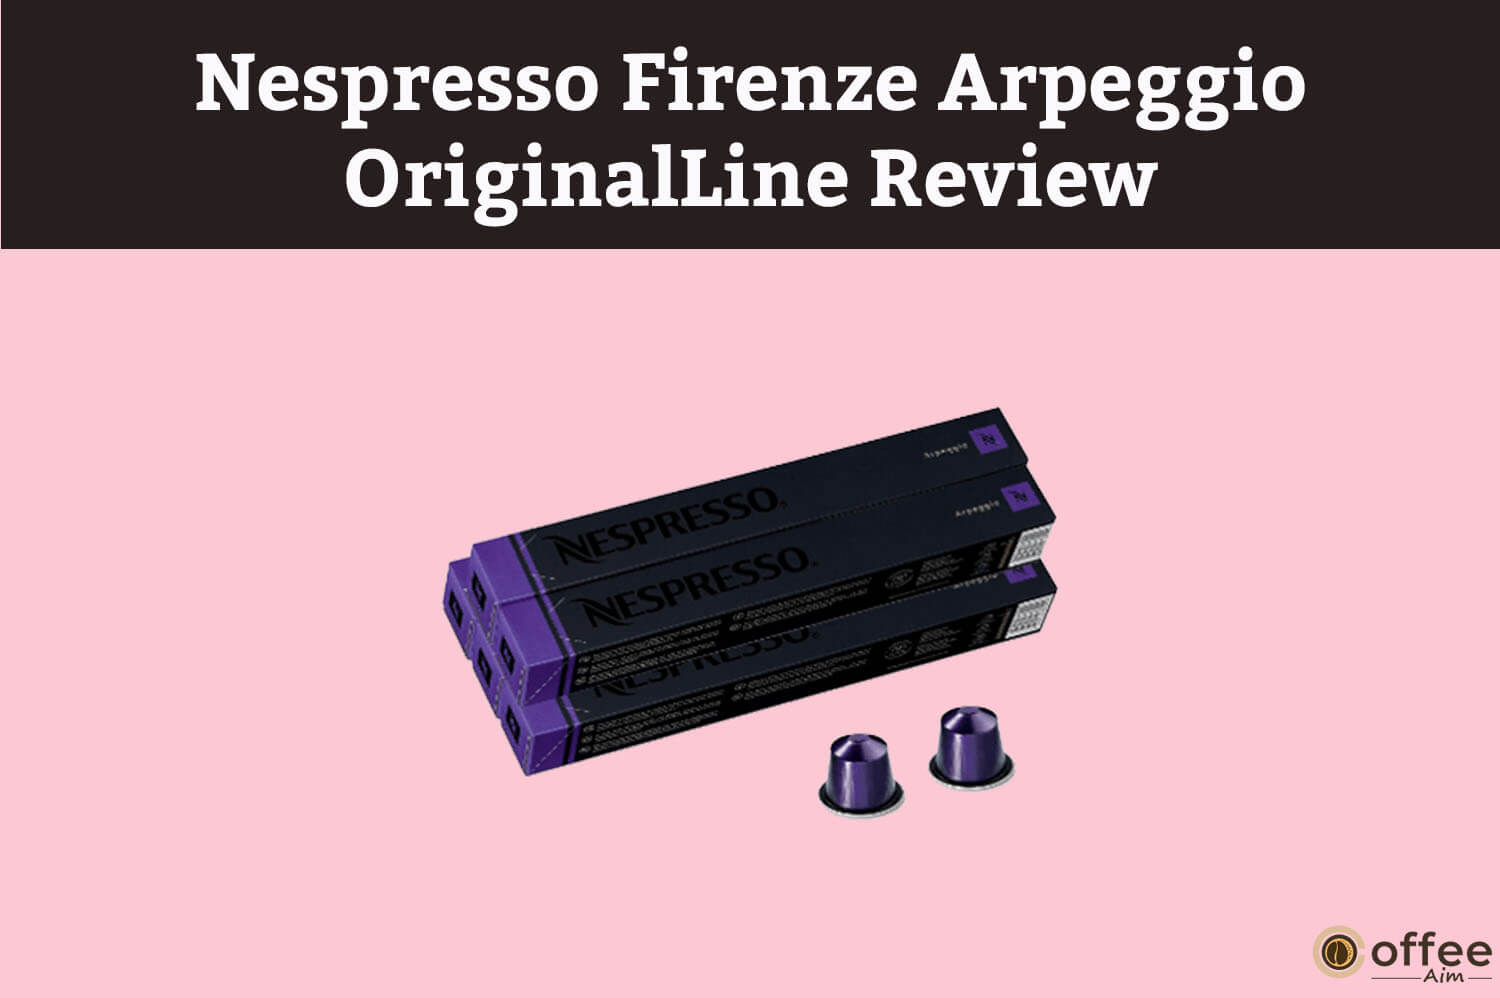 Featured image for the article"Nespresso Firenze Arpeggio OriginalLine Review"